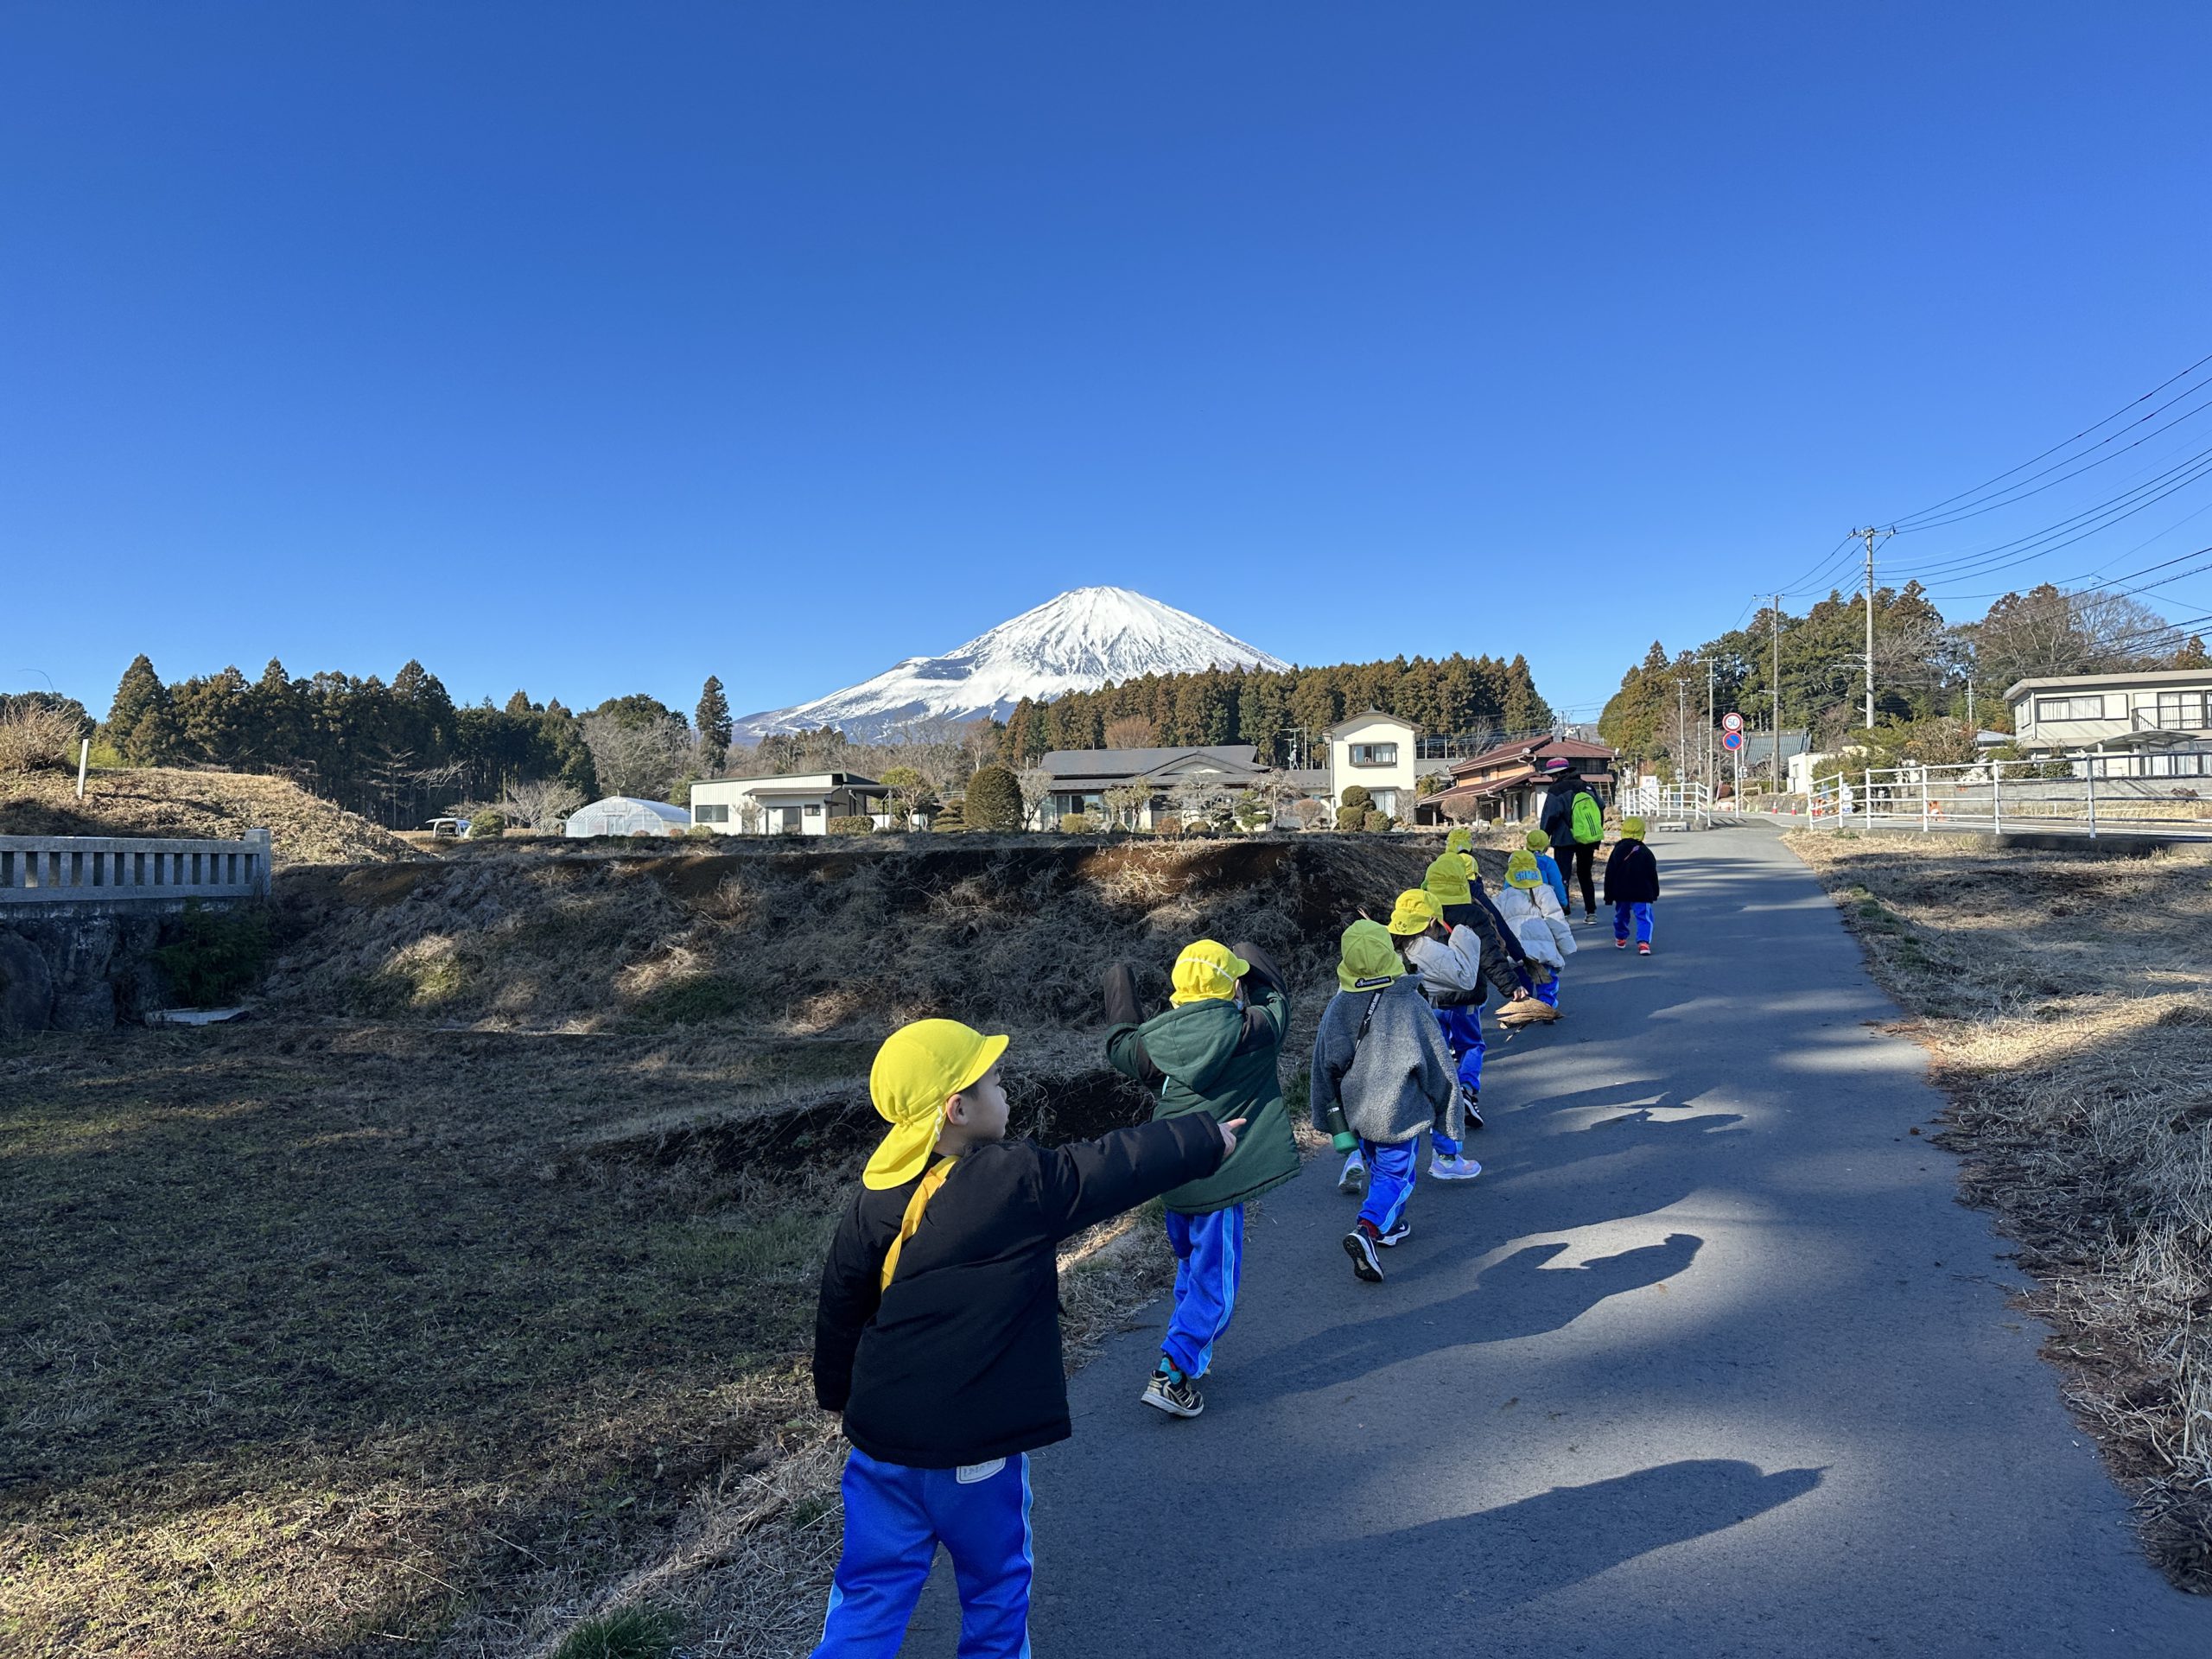 富士山的浪漫雪景和和煦夏日湖畔，都是各國旅客嚮往的聖地。若能在富士山下成長，孩子們將被四季美景與人文氣息環繞，享受與自然共處的完美童年，令人無比羨慕